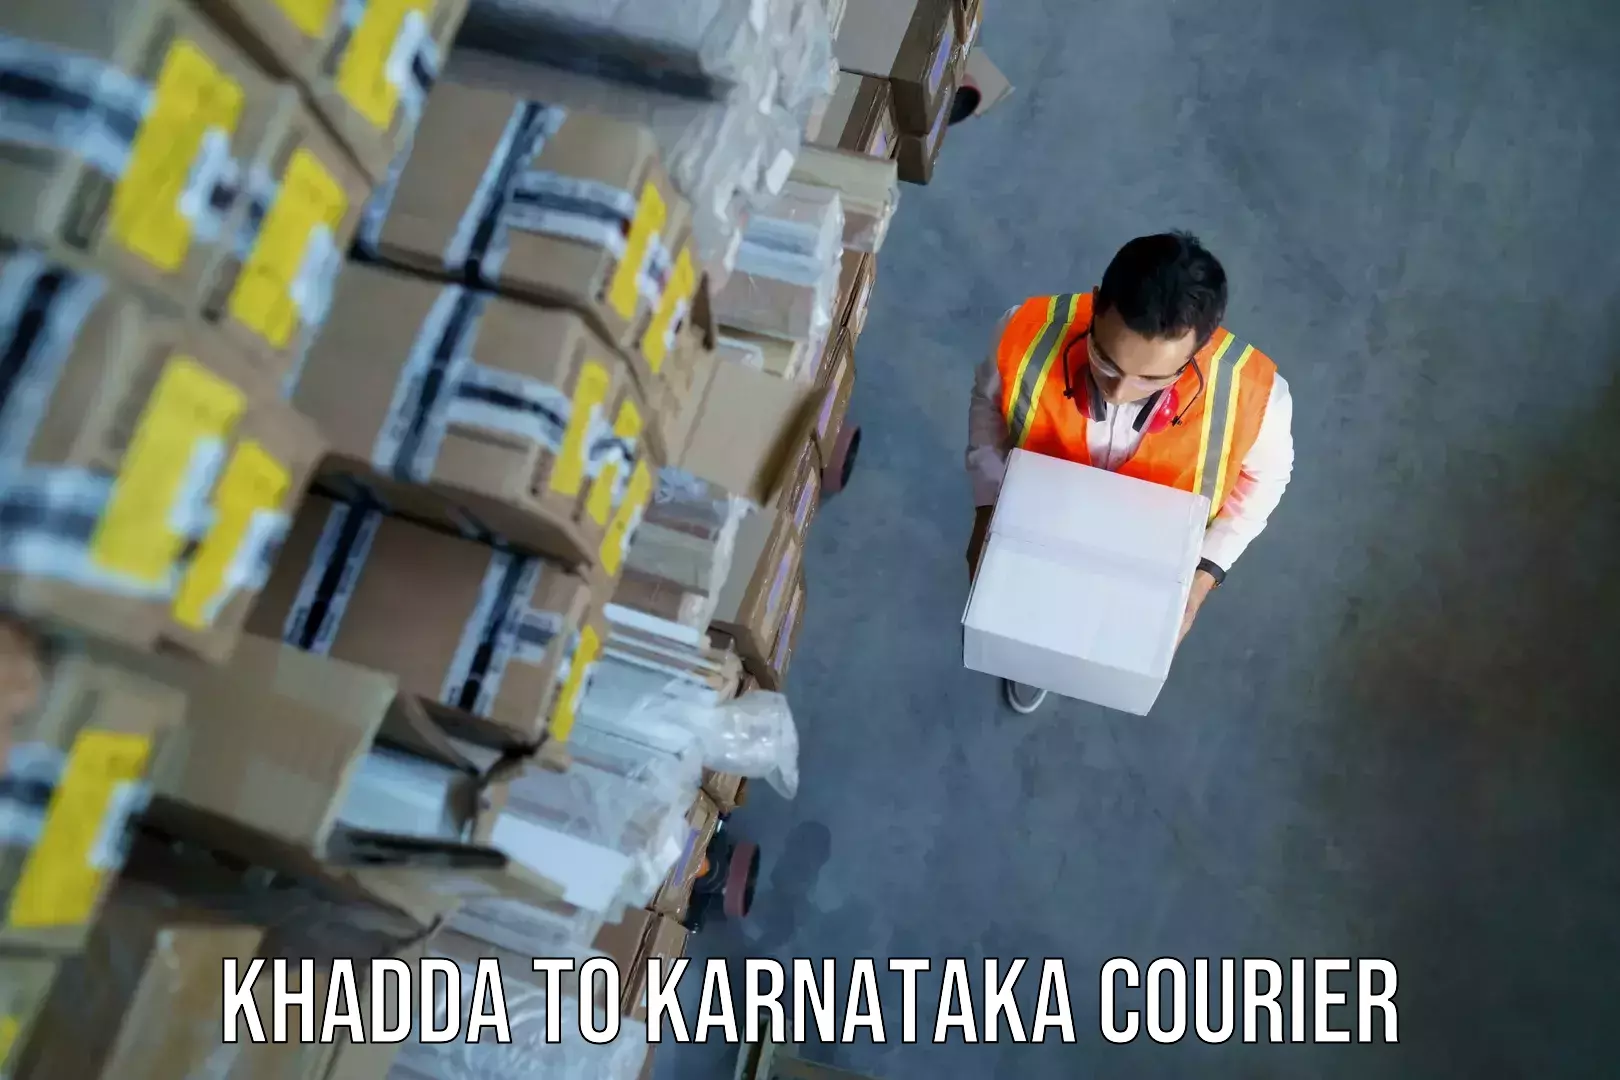 Baggage courier FAQs Khadda to Karnataka